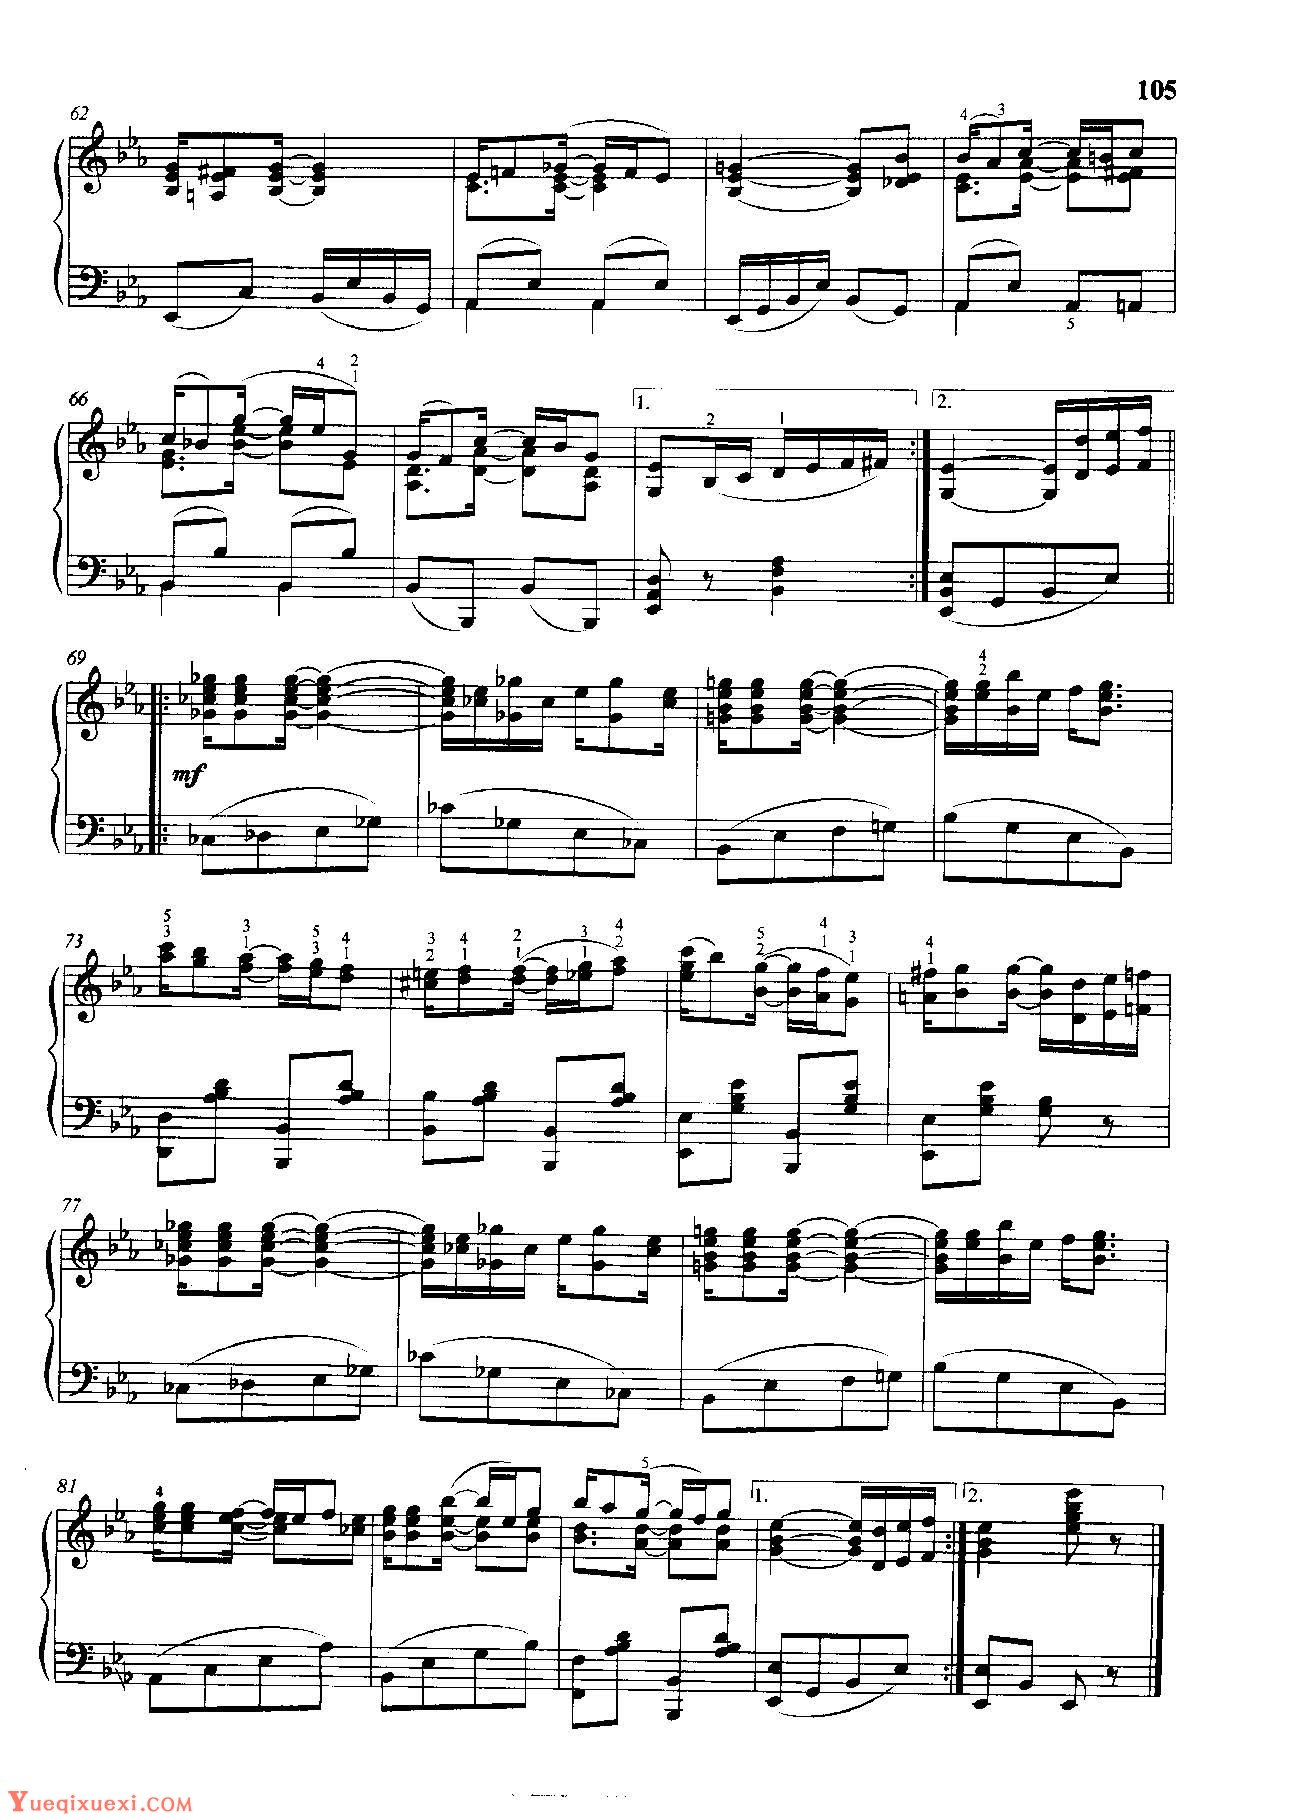 雷格泰姆钢琴乐谱《凤梨树雷格》雷格泰姆之王斯科特·乔普林